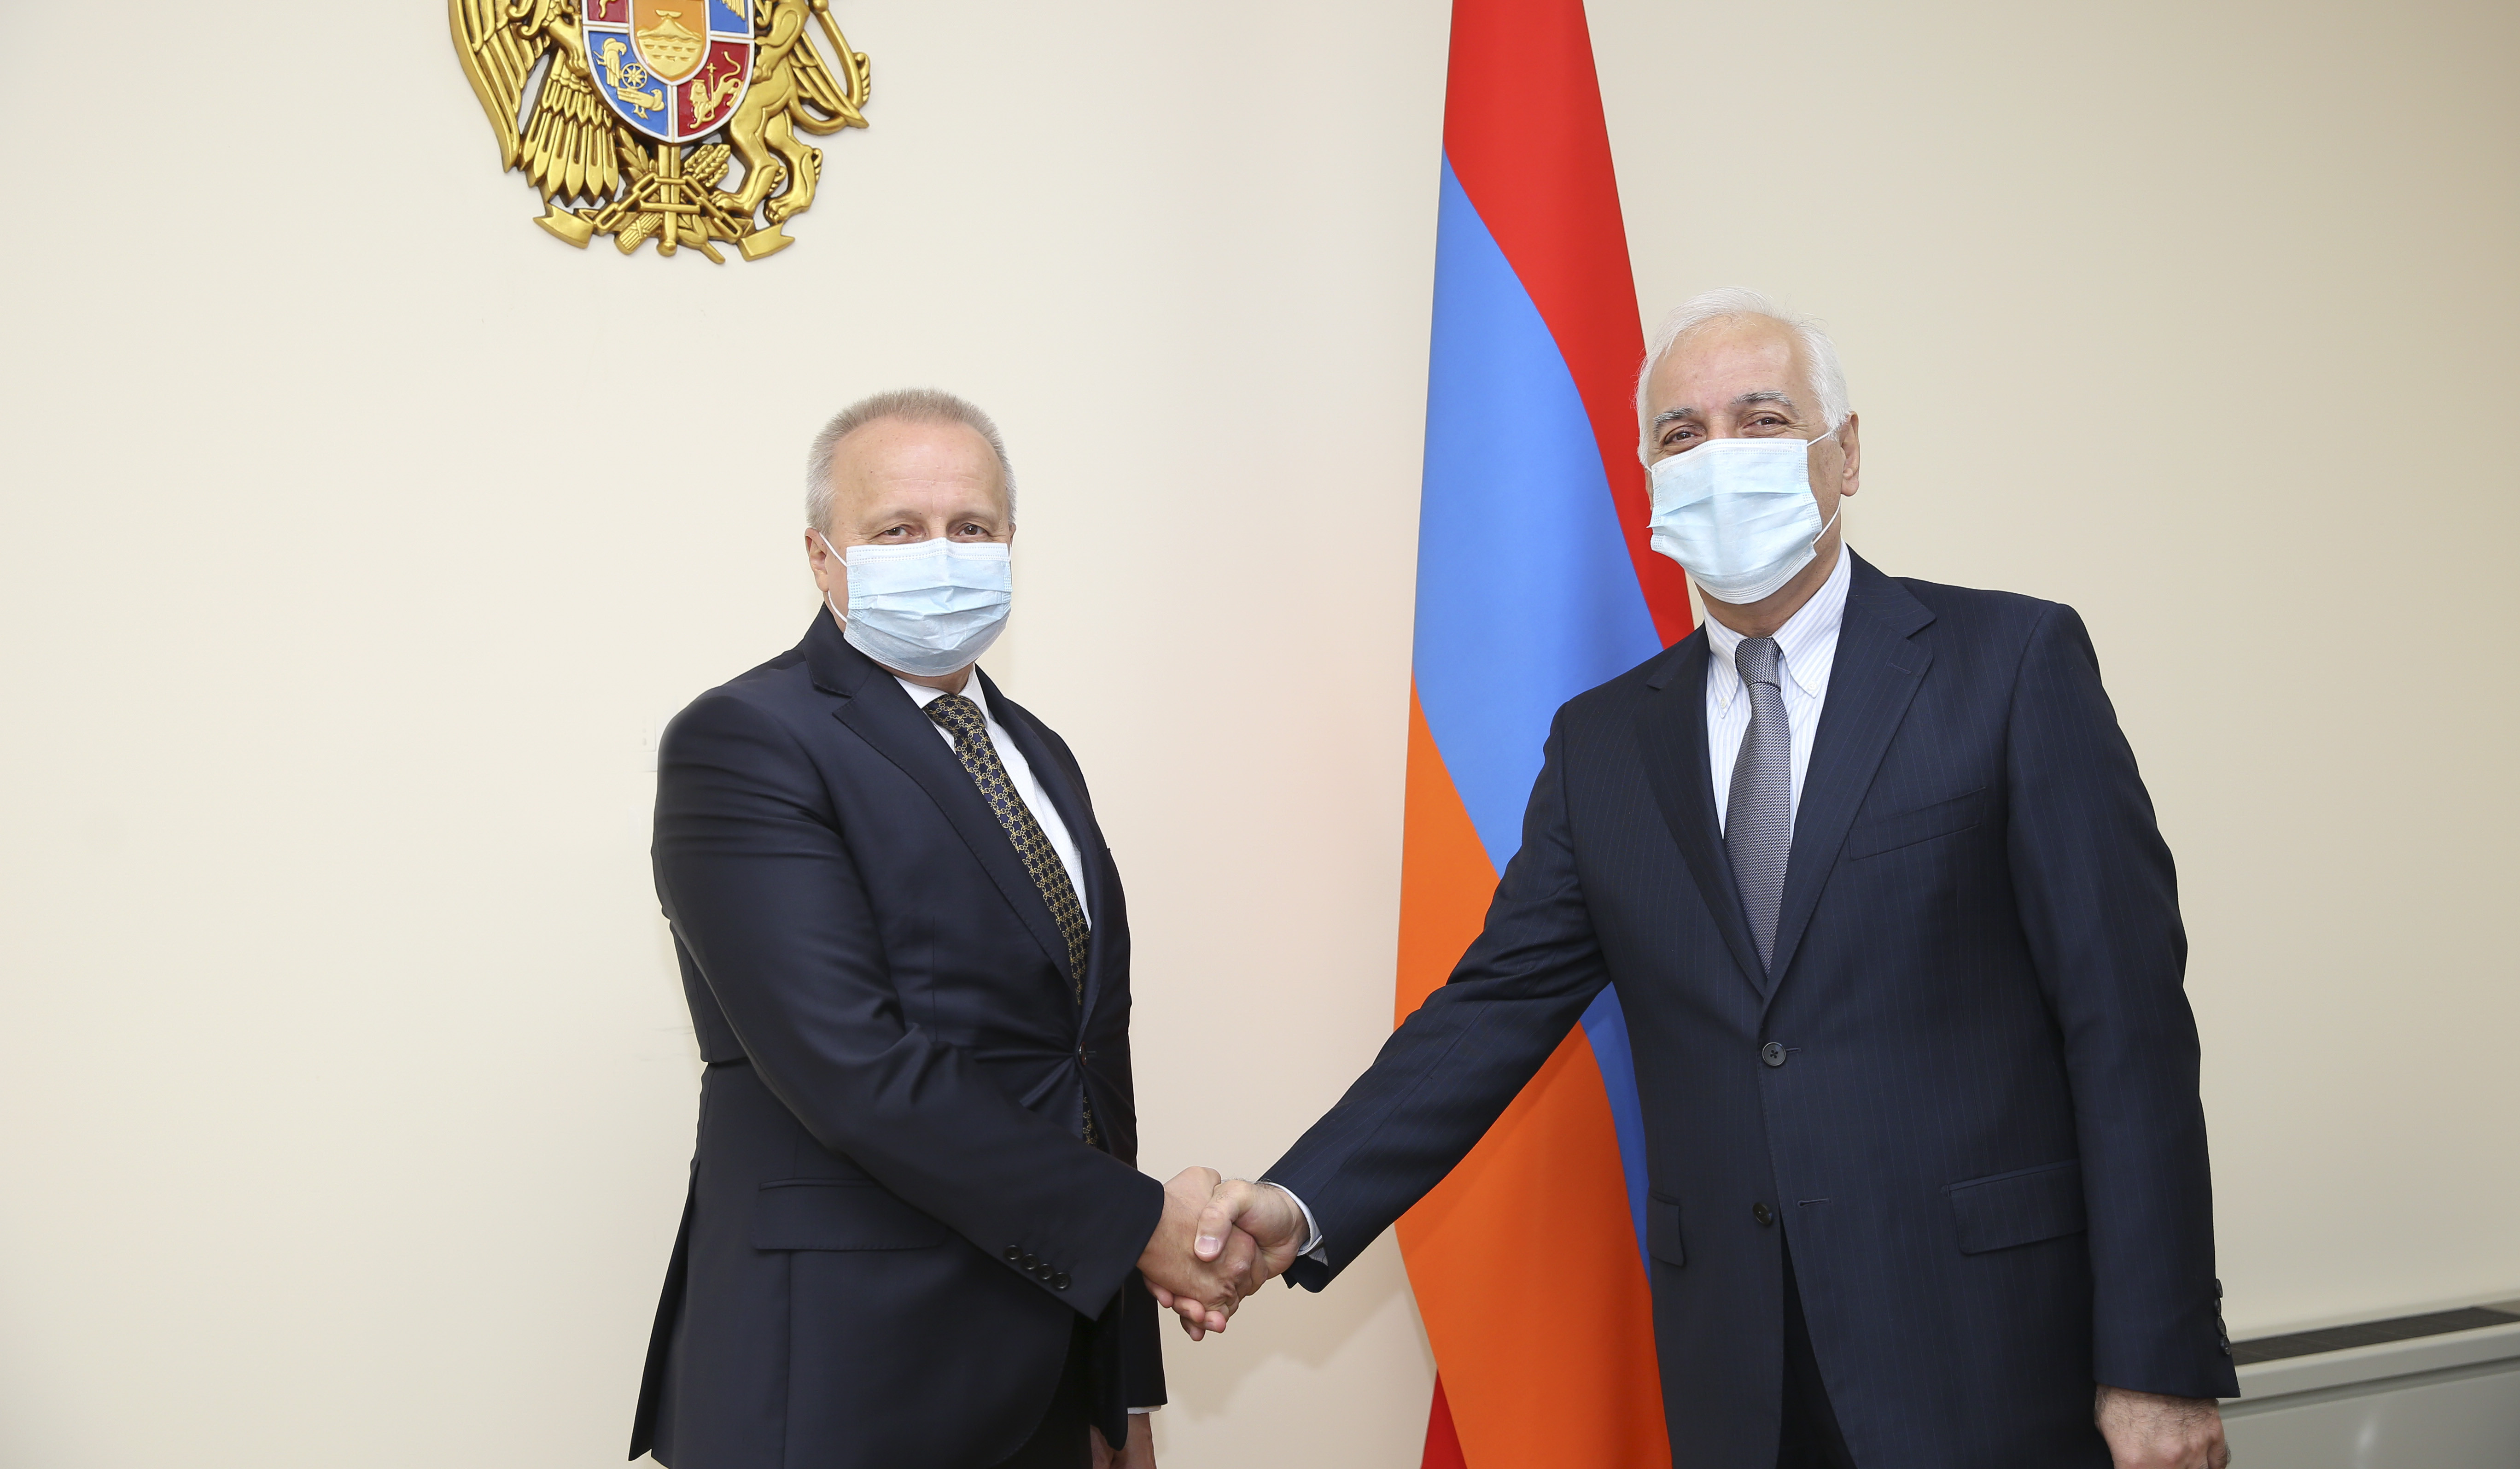 Министр высокотехнологической промышленности Армении и посол России коснулись вопросов сотрудничества в рамках СНГ, ЕАЭС и ОДКБ